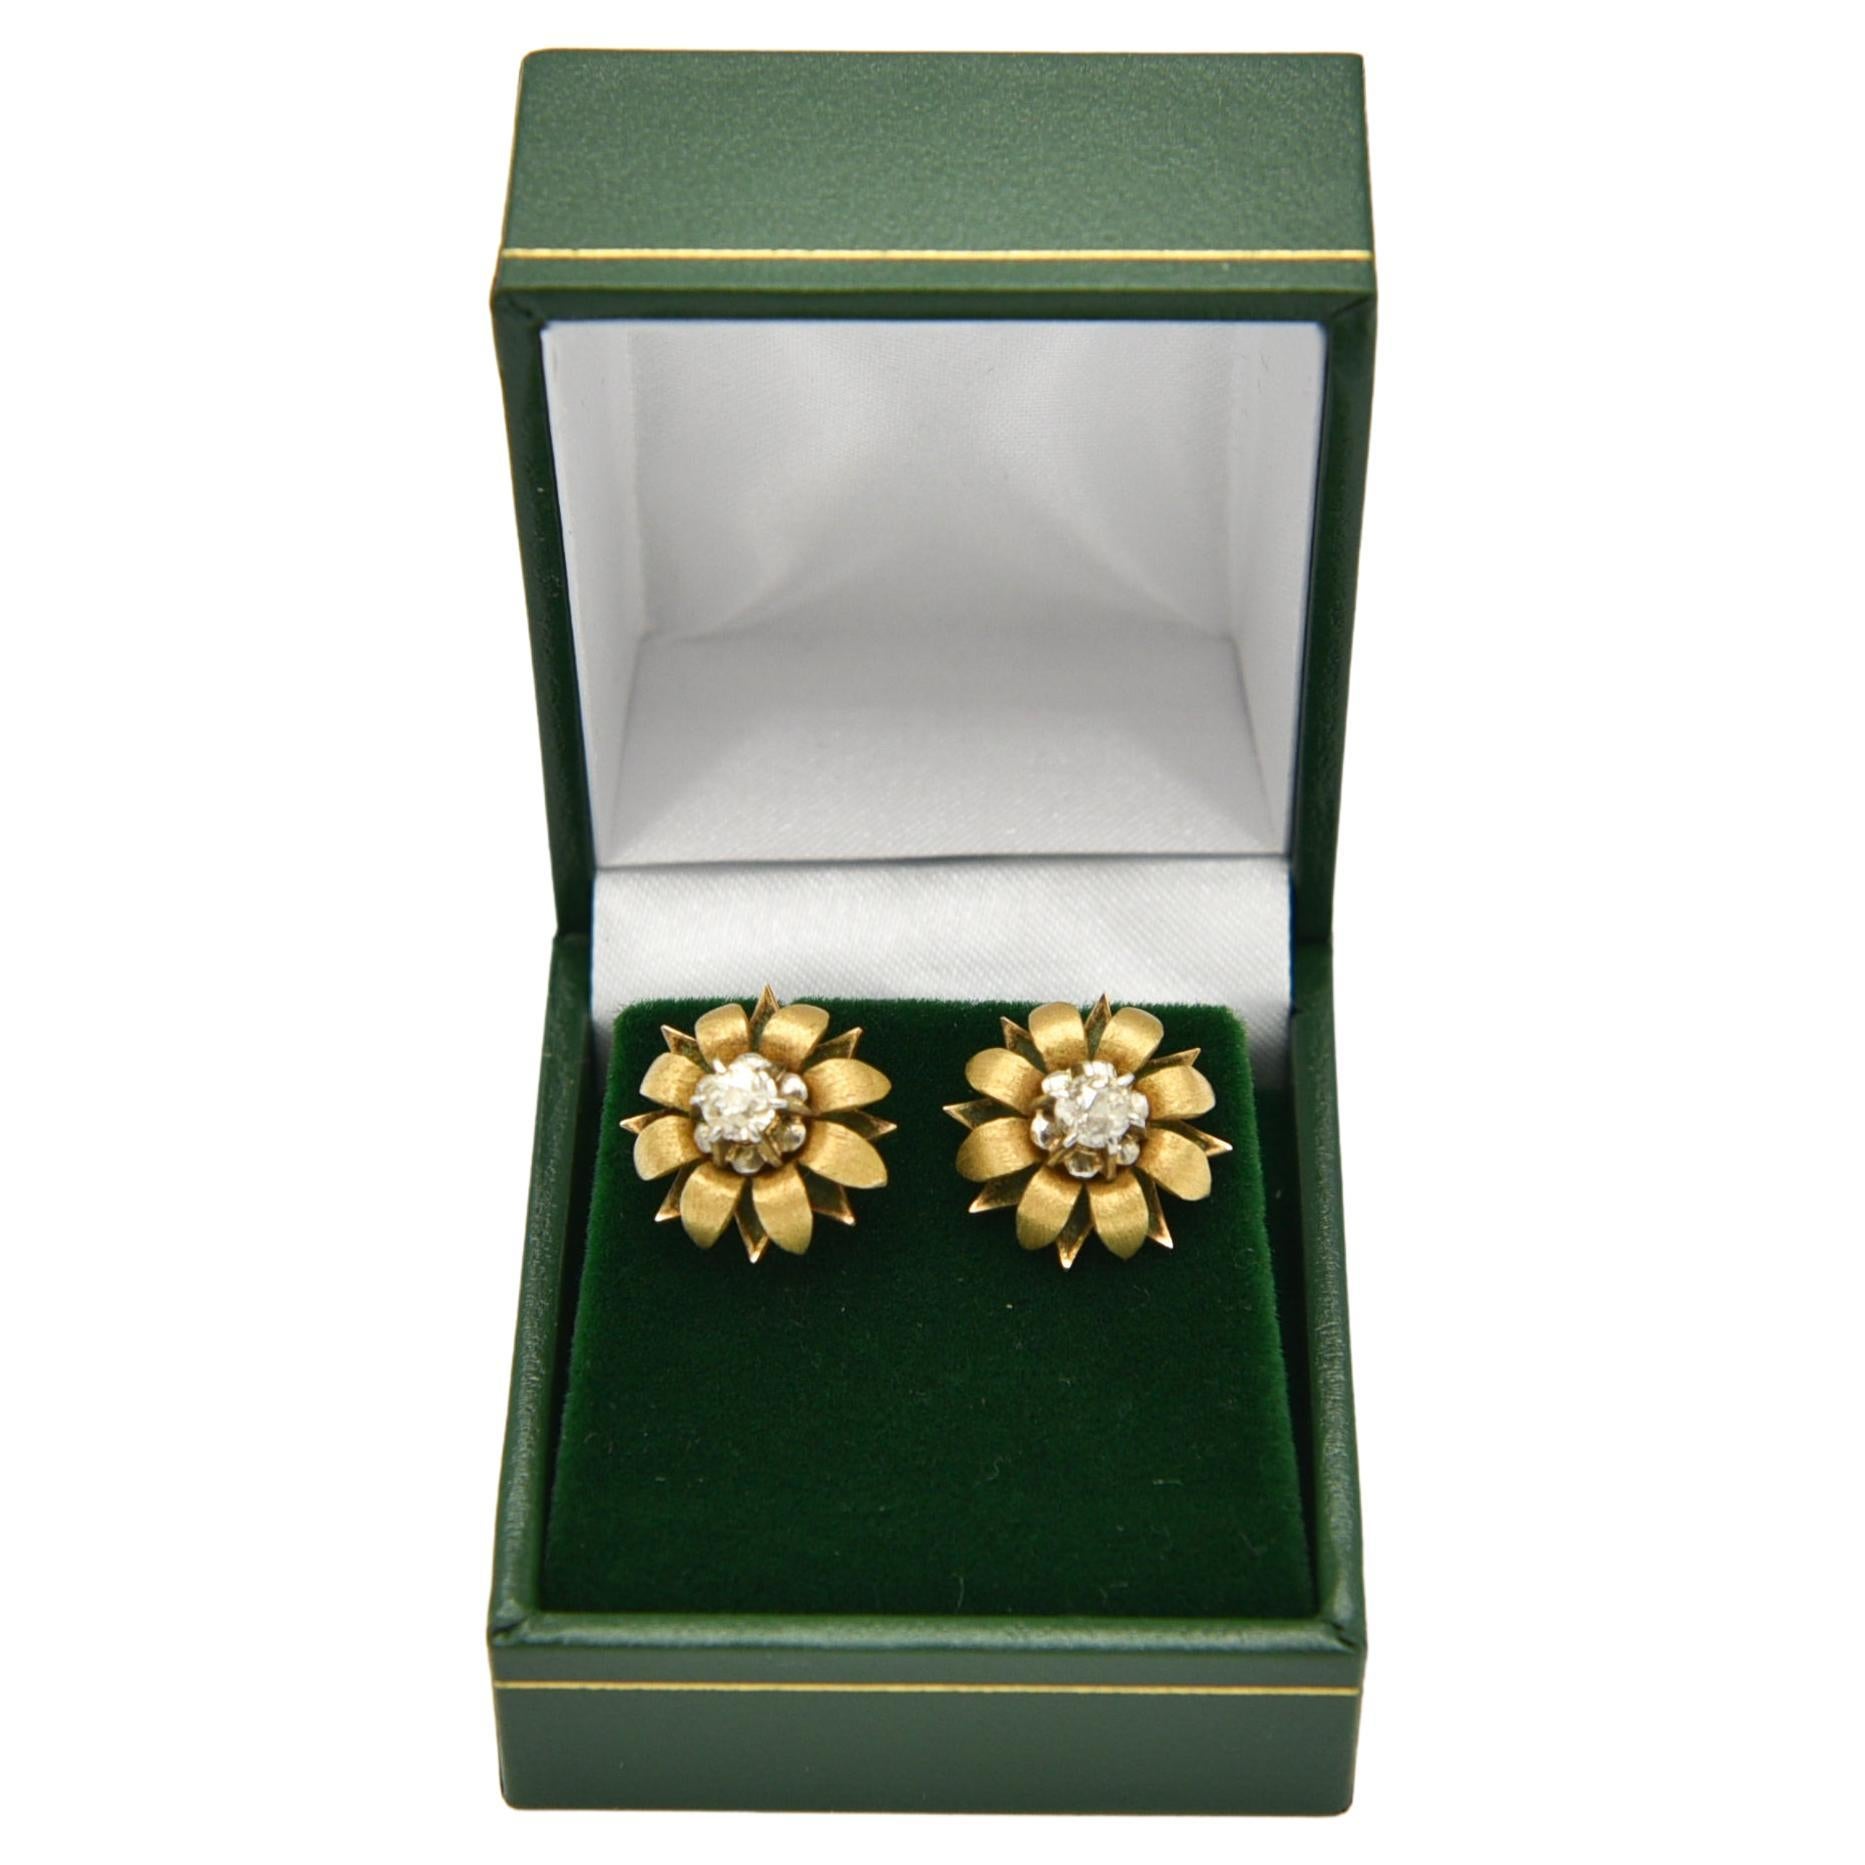 Goldohrringe in Form von Blumen mit mittig gefassten Diamanten mit einem Gesamtgewicht von ca. 0,60 ct (Farbe H-I Reinheit SI1-SI2)

Feingehalt Gold: 0,750 (18K)

Herkunft: Spanien um 1940.

Sehr guter Zustand

Artikelgewicht: 6,48g

dem Kauf wird